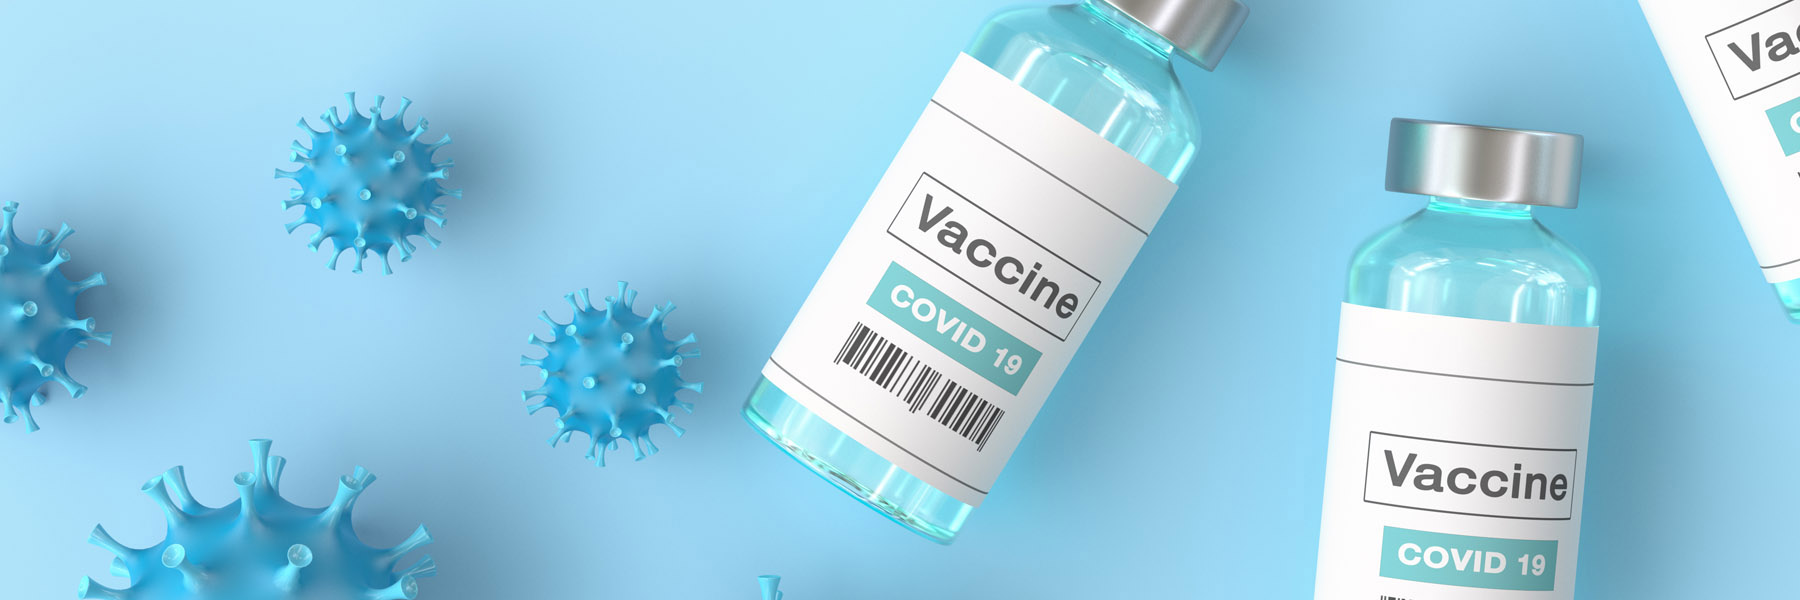 COVID-19 vaccine viles